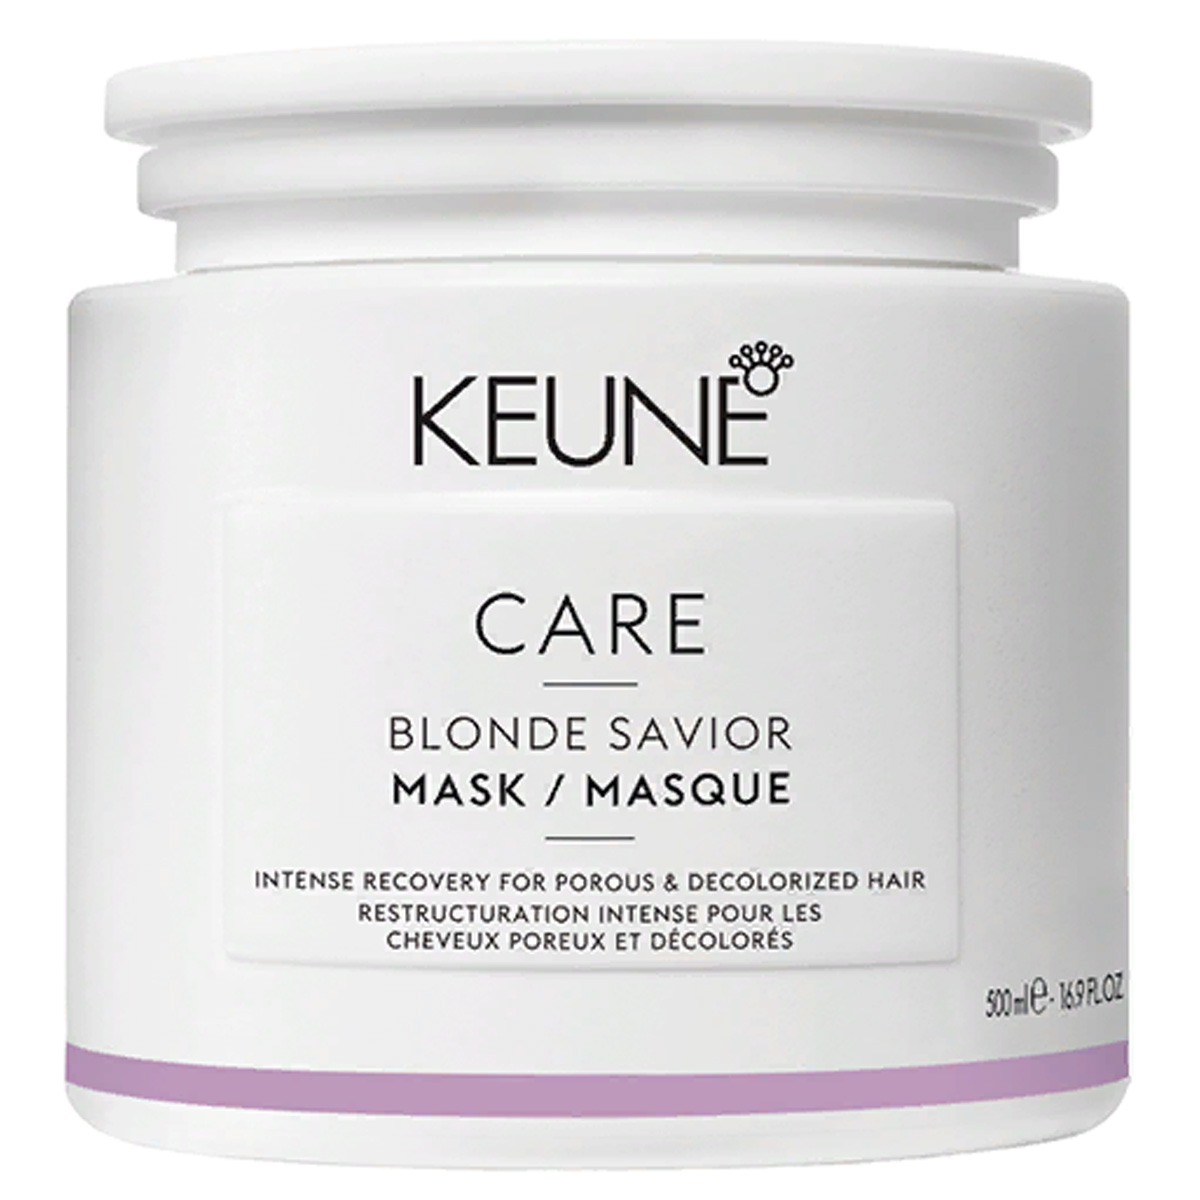 Keune Маска Безупречный блонд, 500 мл (Keune, Care) маска для волос framesi маска для светлых волос morphosis soft blonde